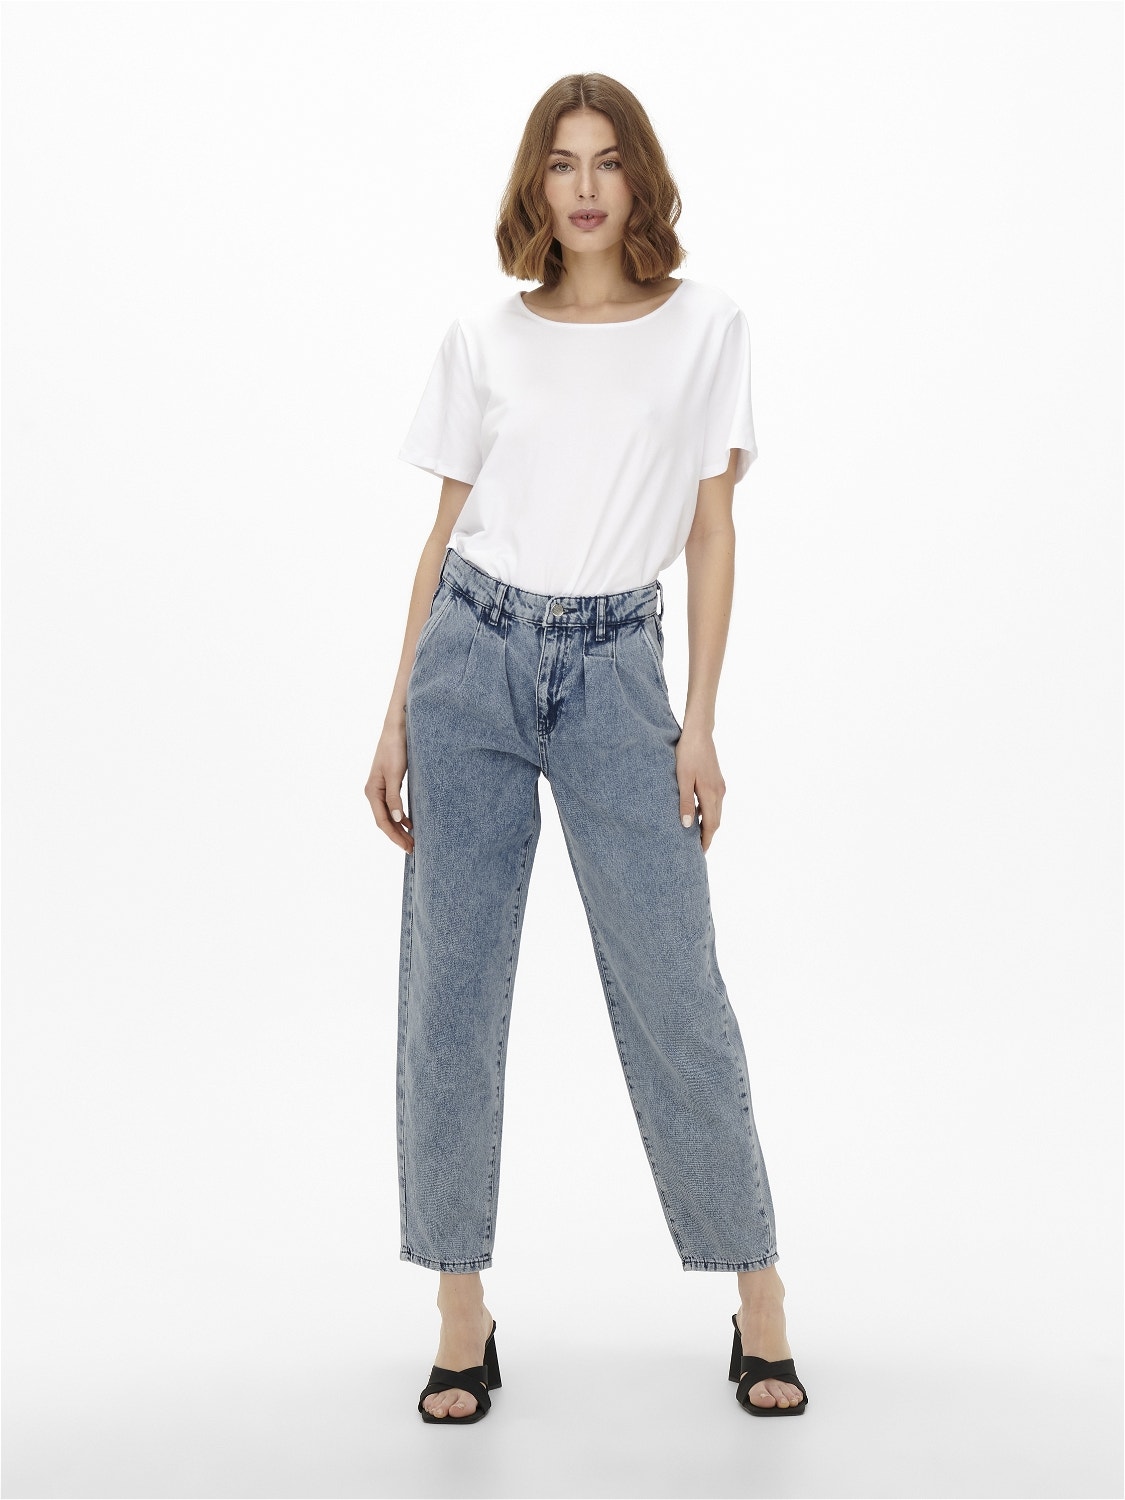 ONLY Carrot Fit High waist Jeans -Medium Blue Denim - 15200166